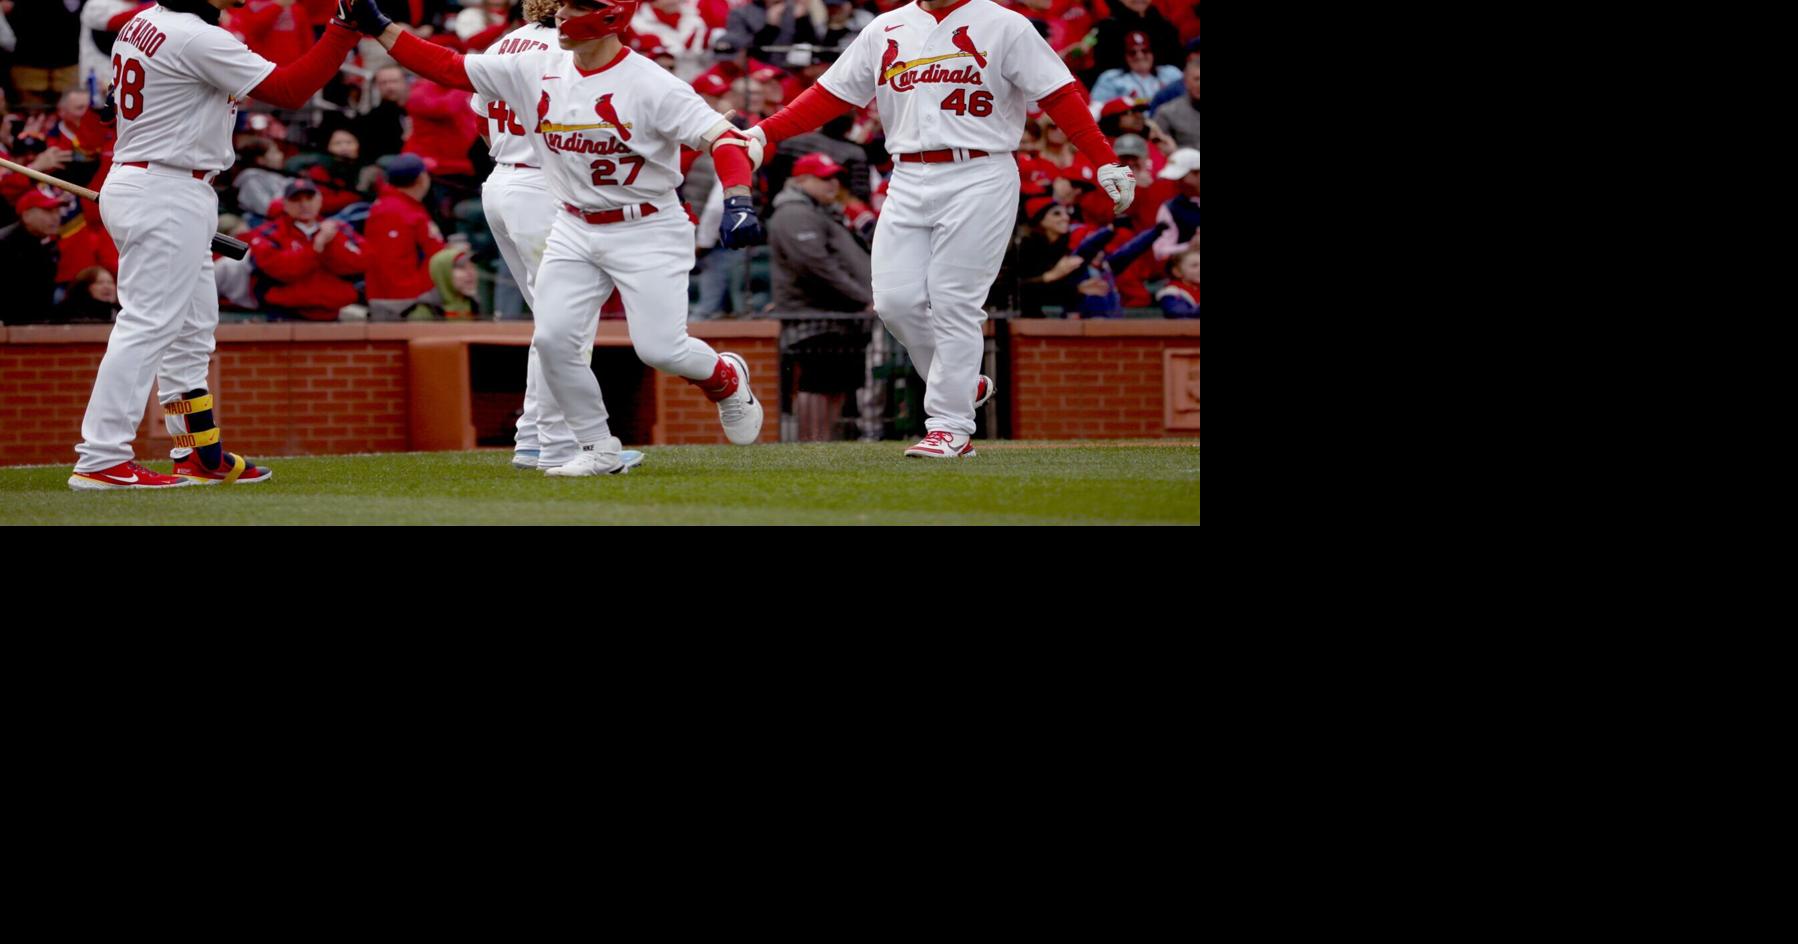 Former St. Louis Cardinals center fielder Jim Edmonds waves to